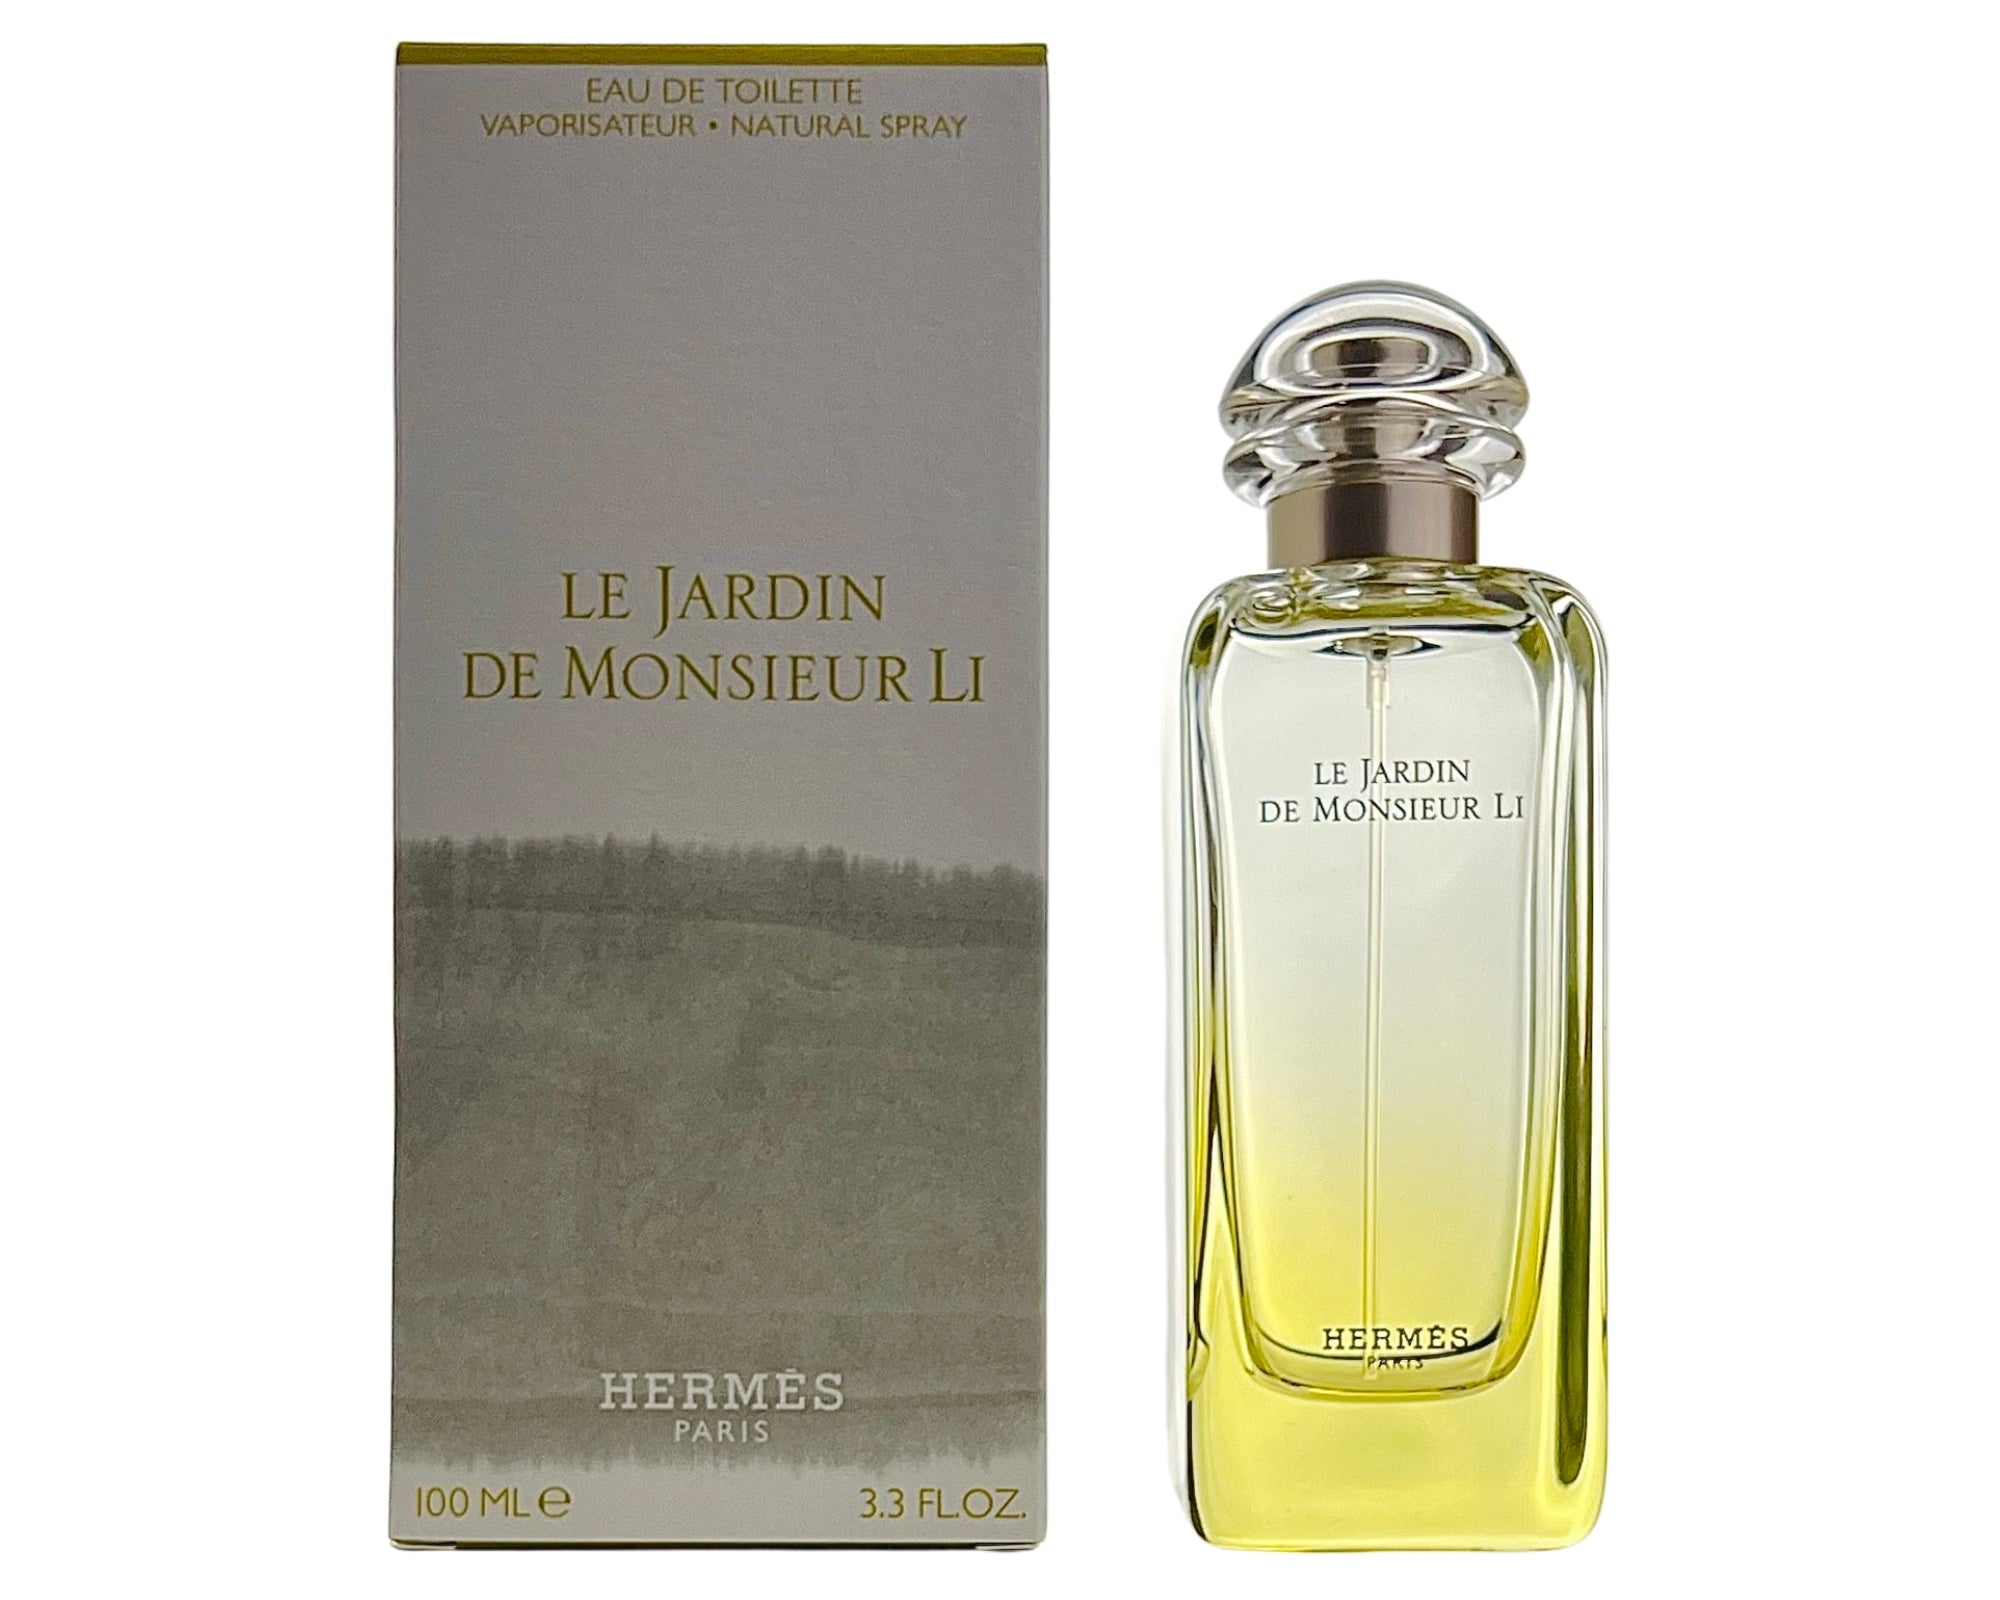 Perfume Eau De Le Jardin Li Hermes Toilette Monsieur by De